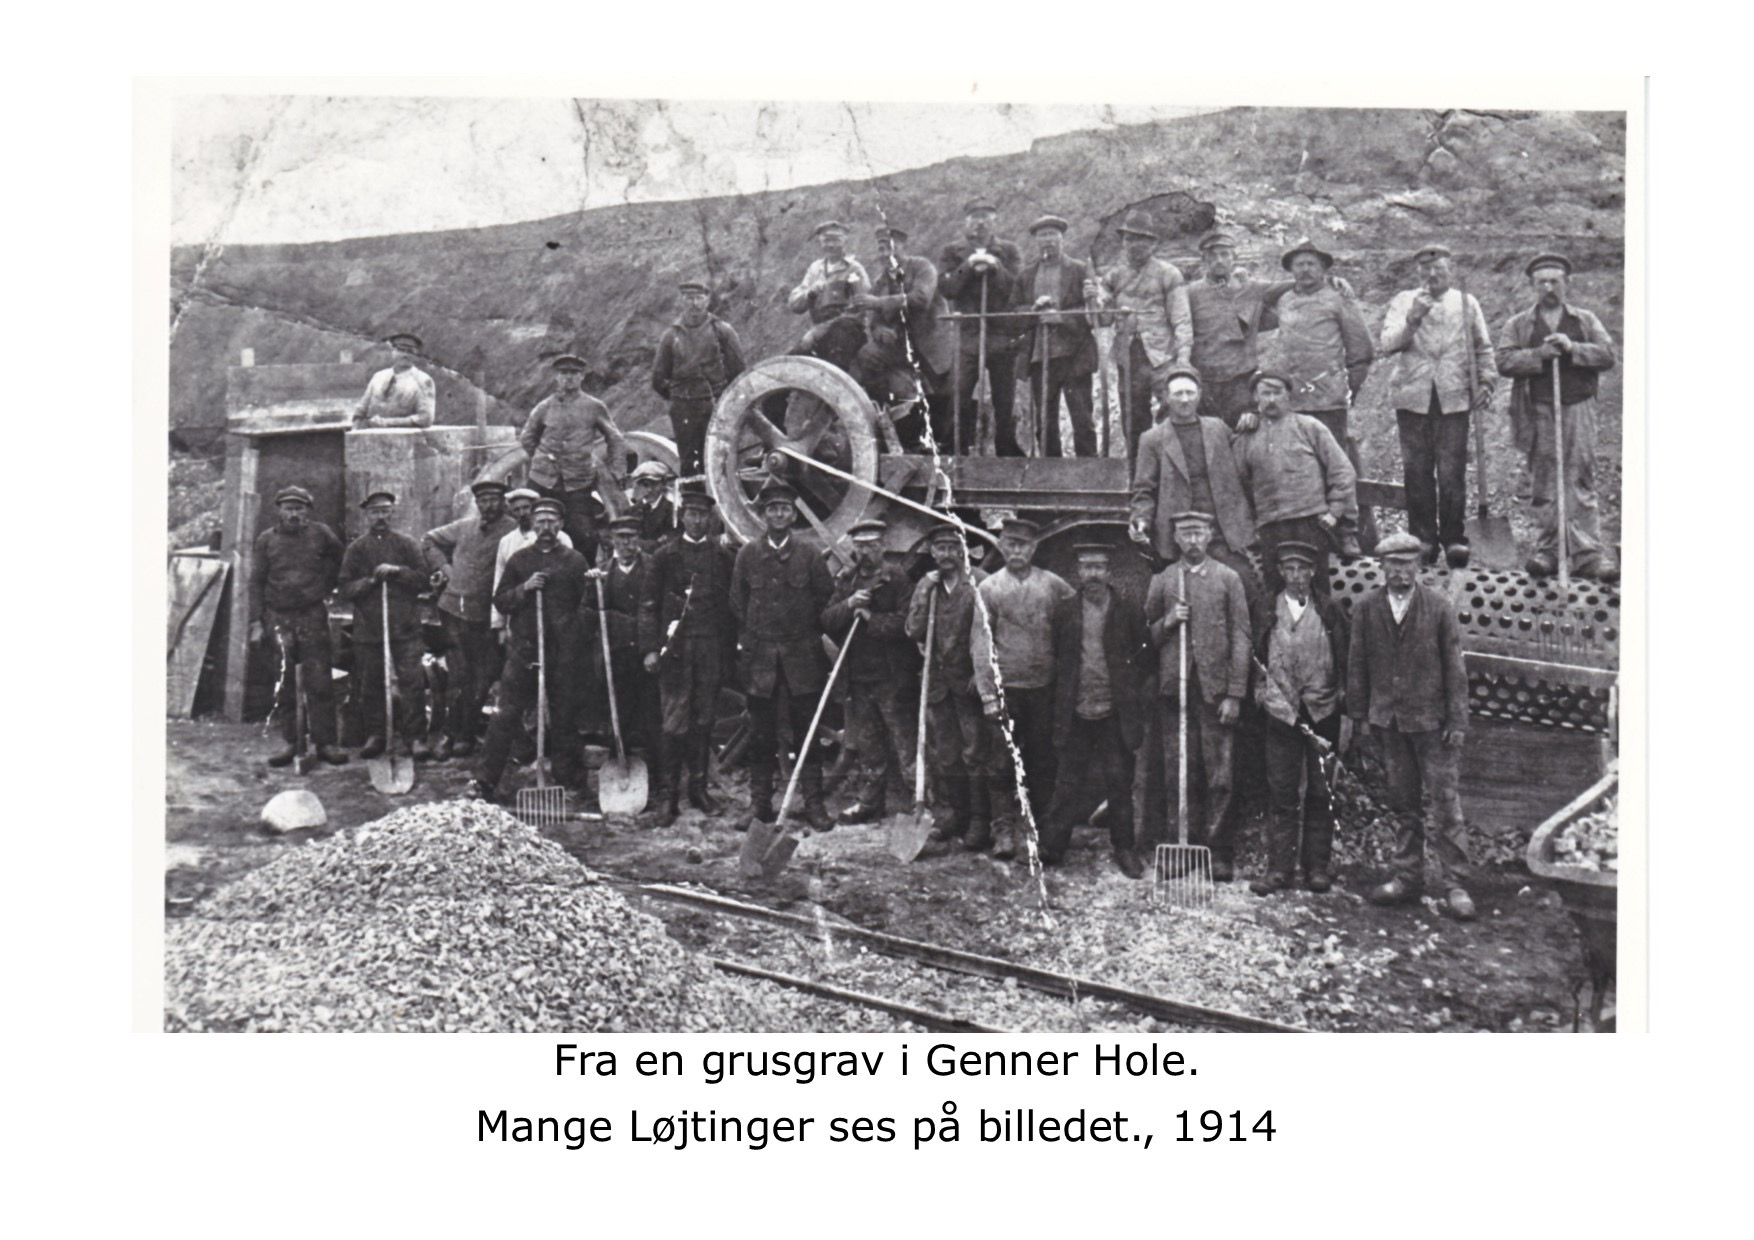 Grusgrav ved Genner Hole - 1914 